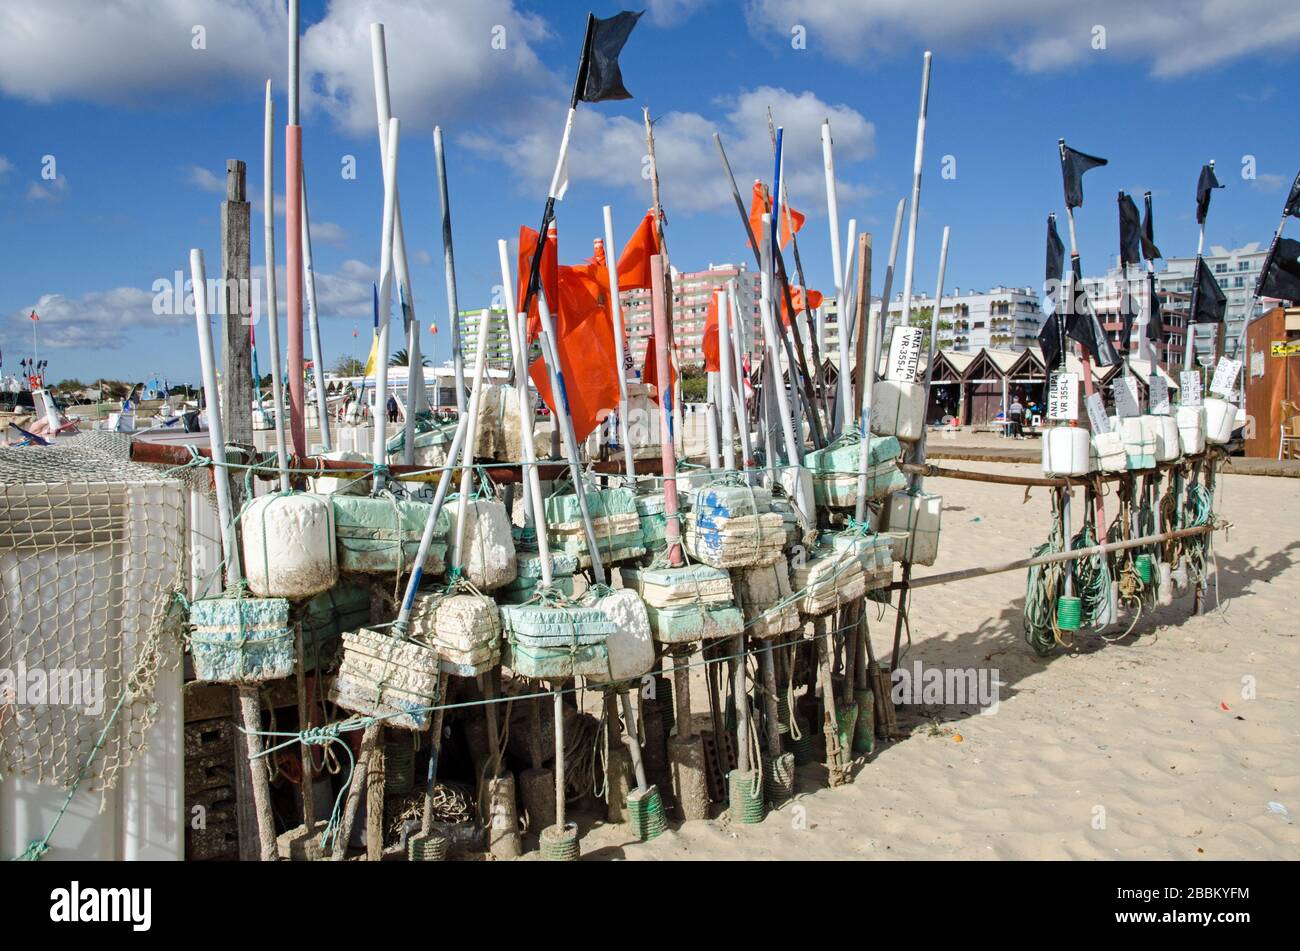 Monte Gordo, Portugal - 18 novembre 2019: Flotteurs et filets appartenant aux pêcheurs locaux, séchant au soleil sur la plage de sable de la mer res Banque D'Images